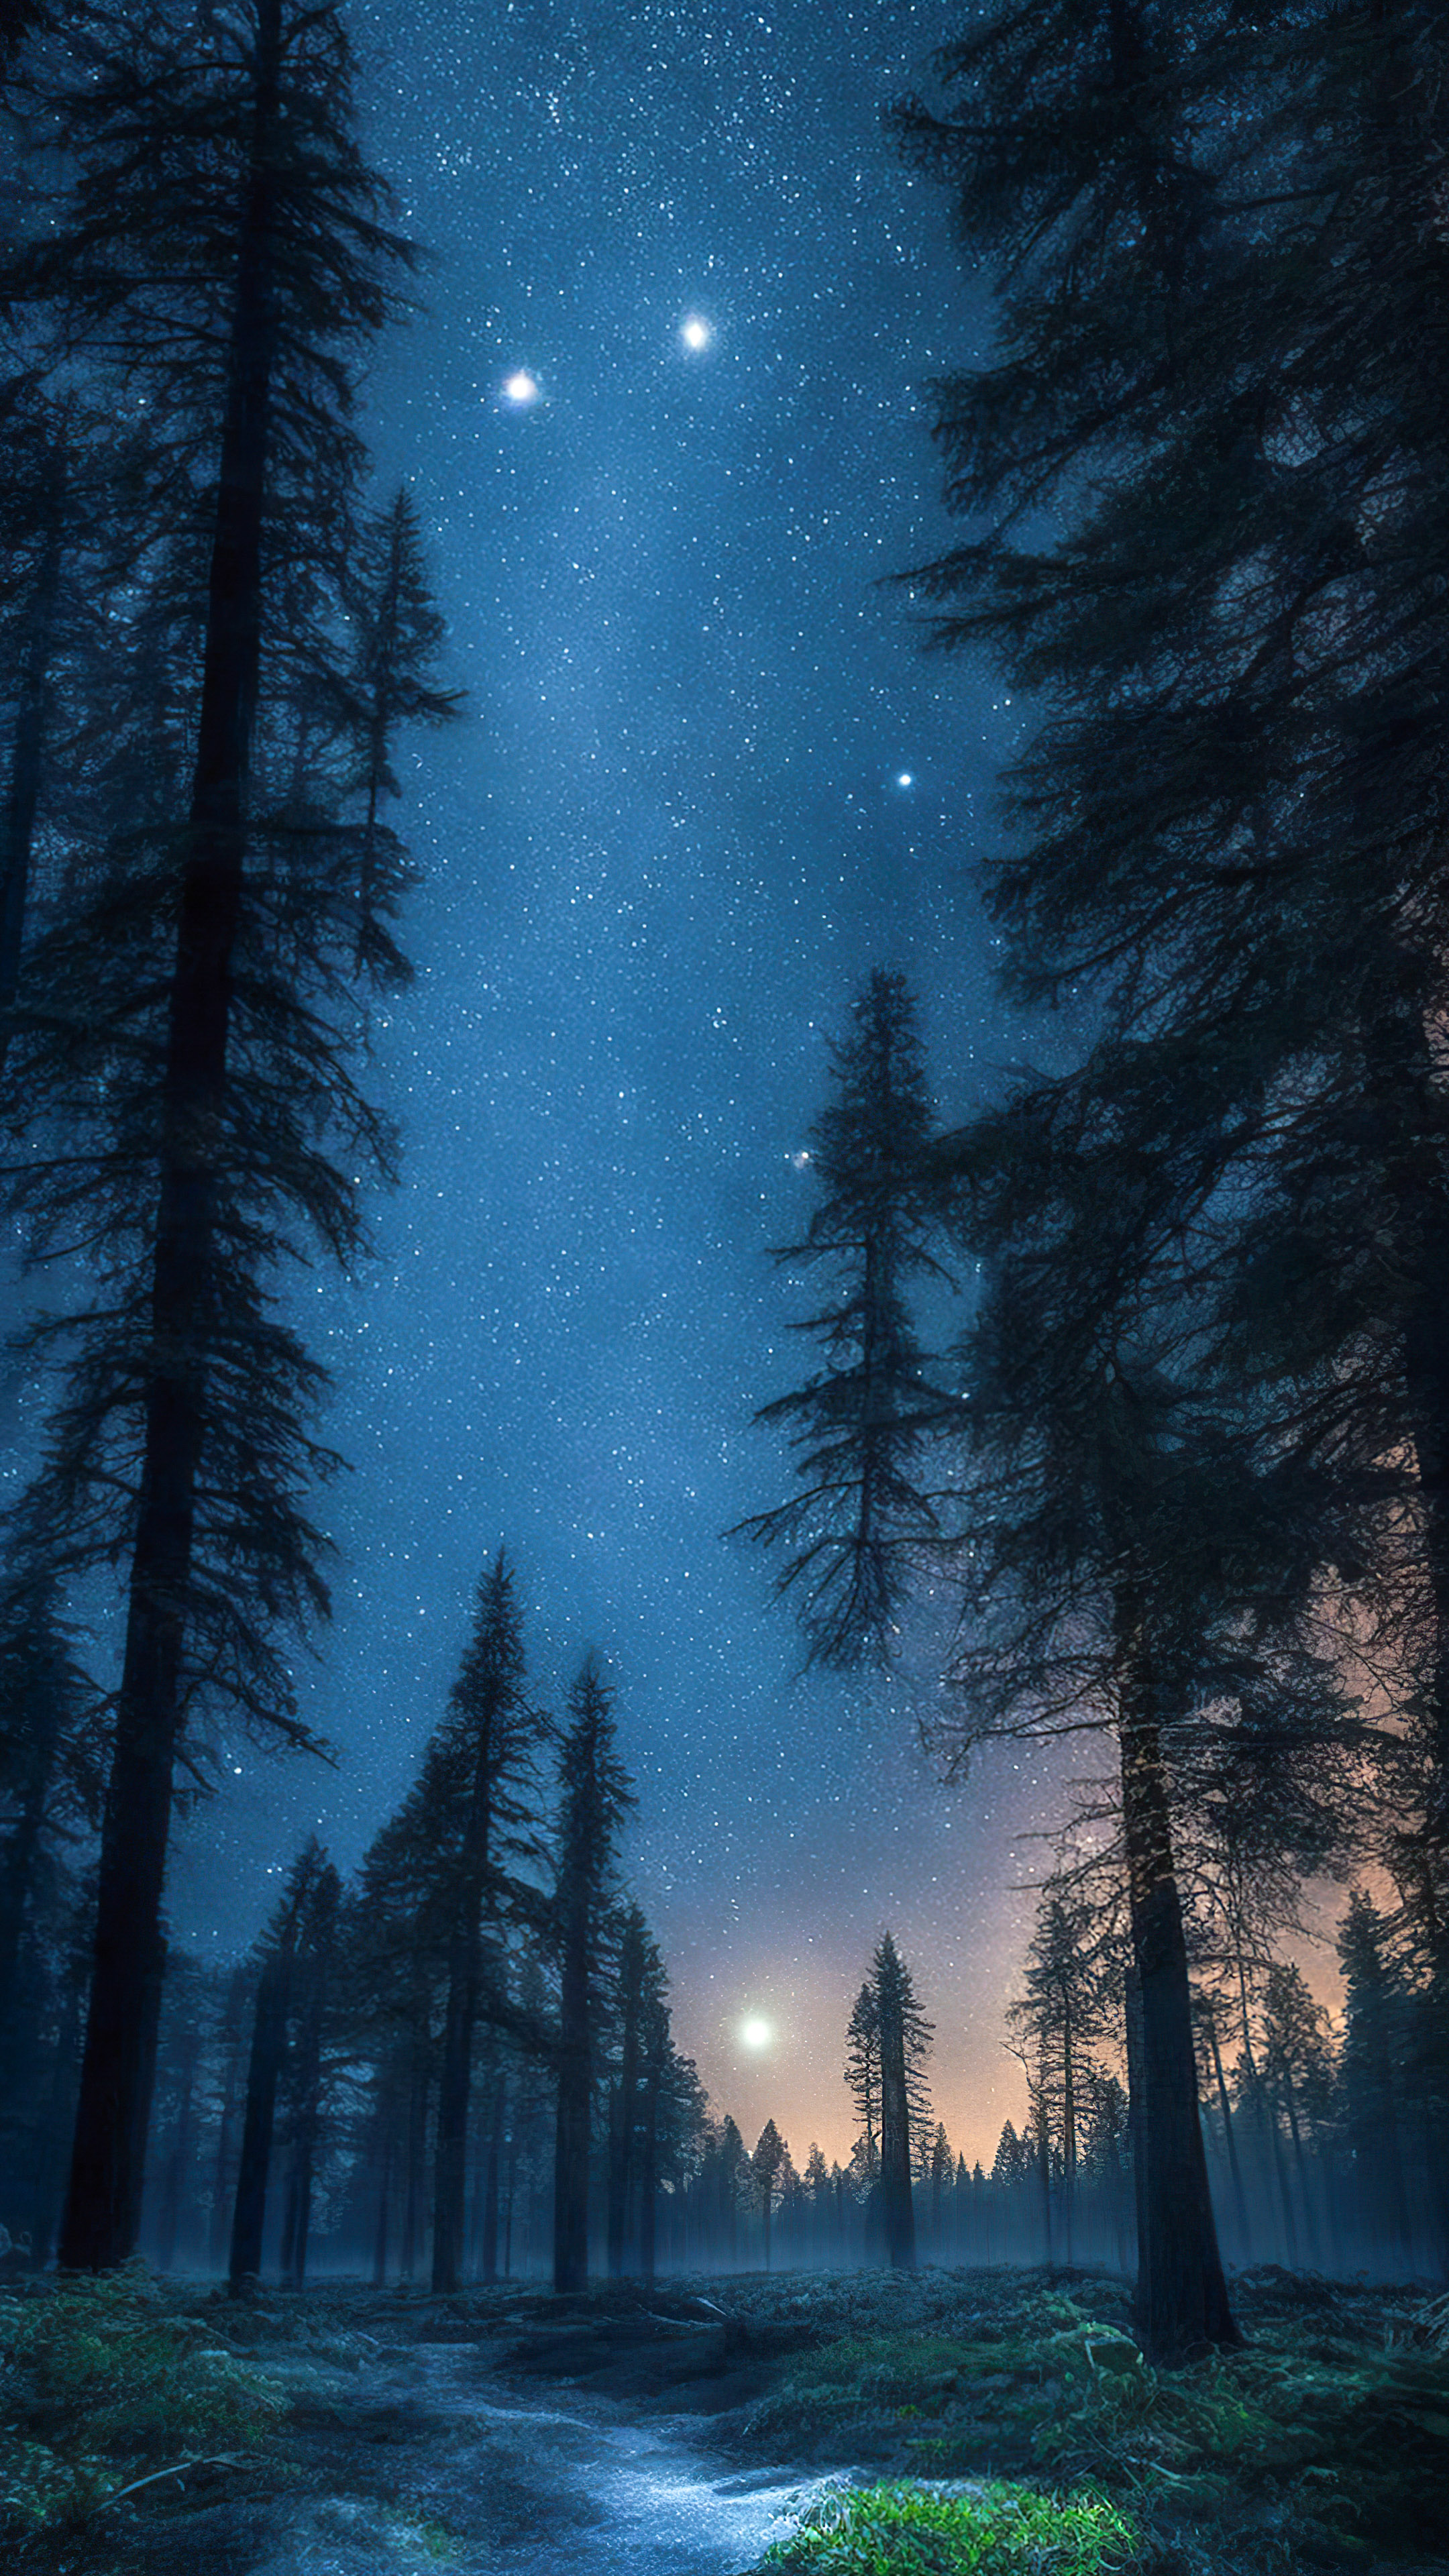 Vivez la tranquillité de notre fond d'écran de ciel de minuit, dépeignant une forêt tranquille la nuit, avec de grands arbres anciens sous un ciel étoilé et une douce lueur au clair de lune.